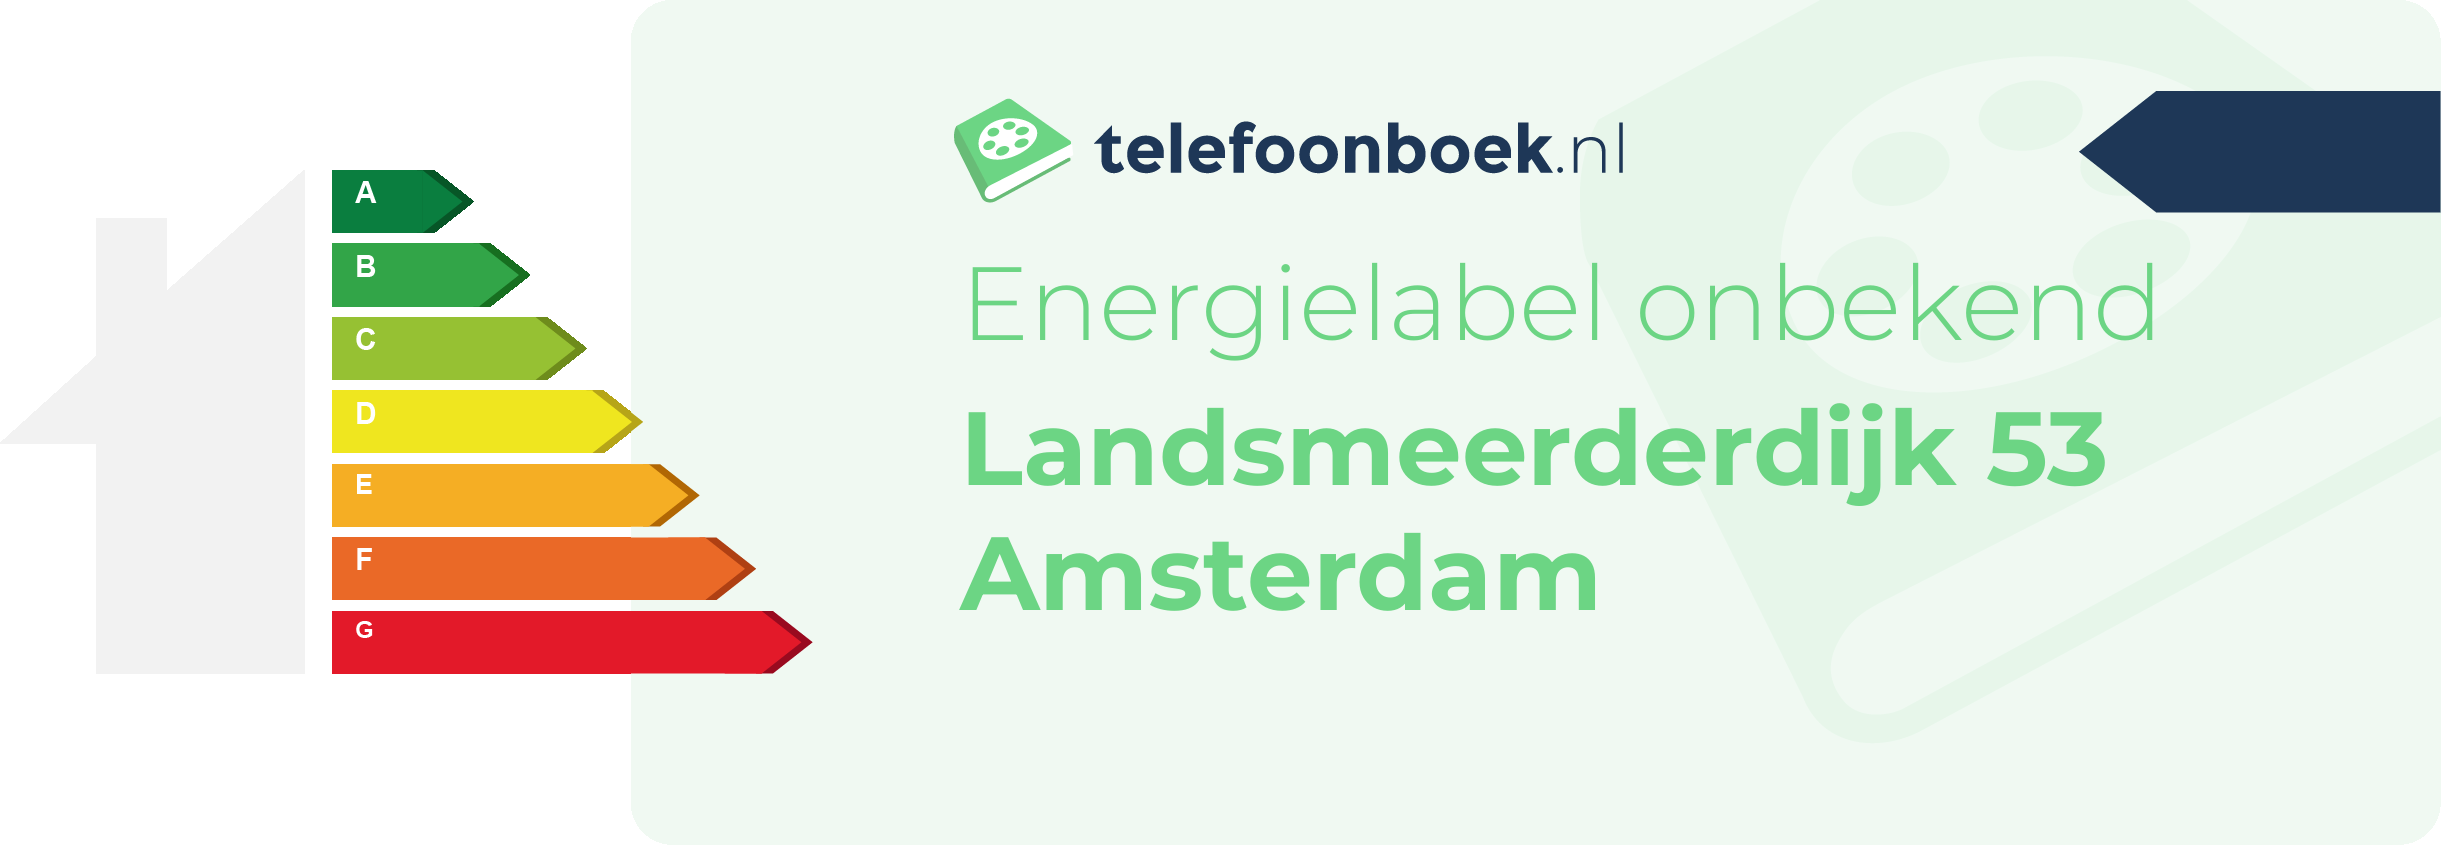 Energielabel Landsmeerderdijk 53 Amsterdam